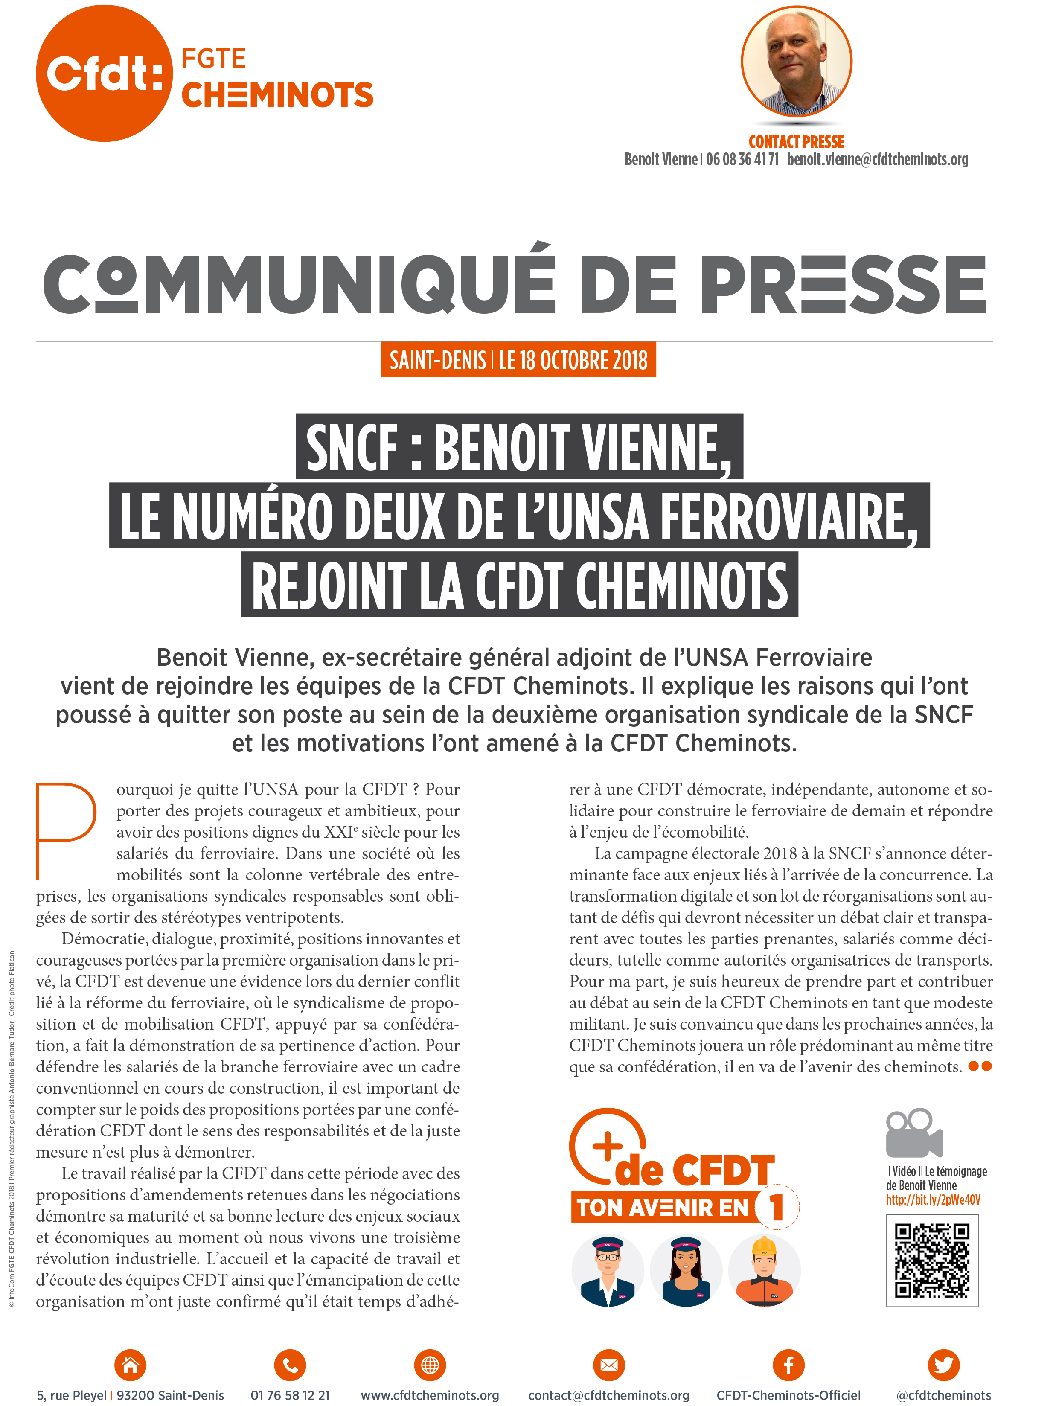 SNCF : Benoit Vienne, le numéro deux de l’UNSA ferroviaire, rejoint la CFDT Cheminots